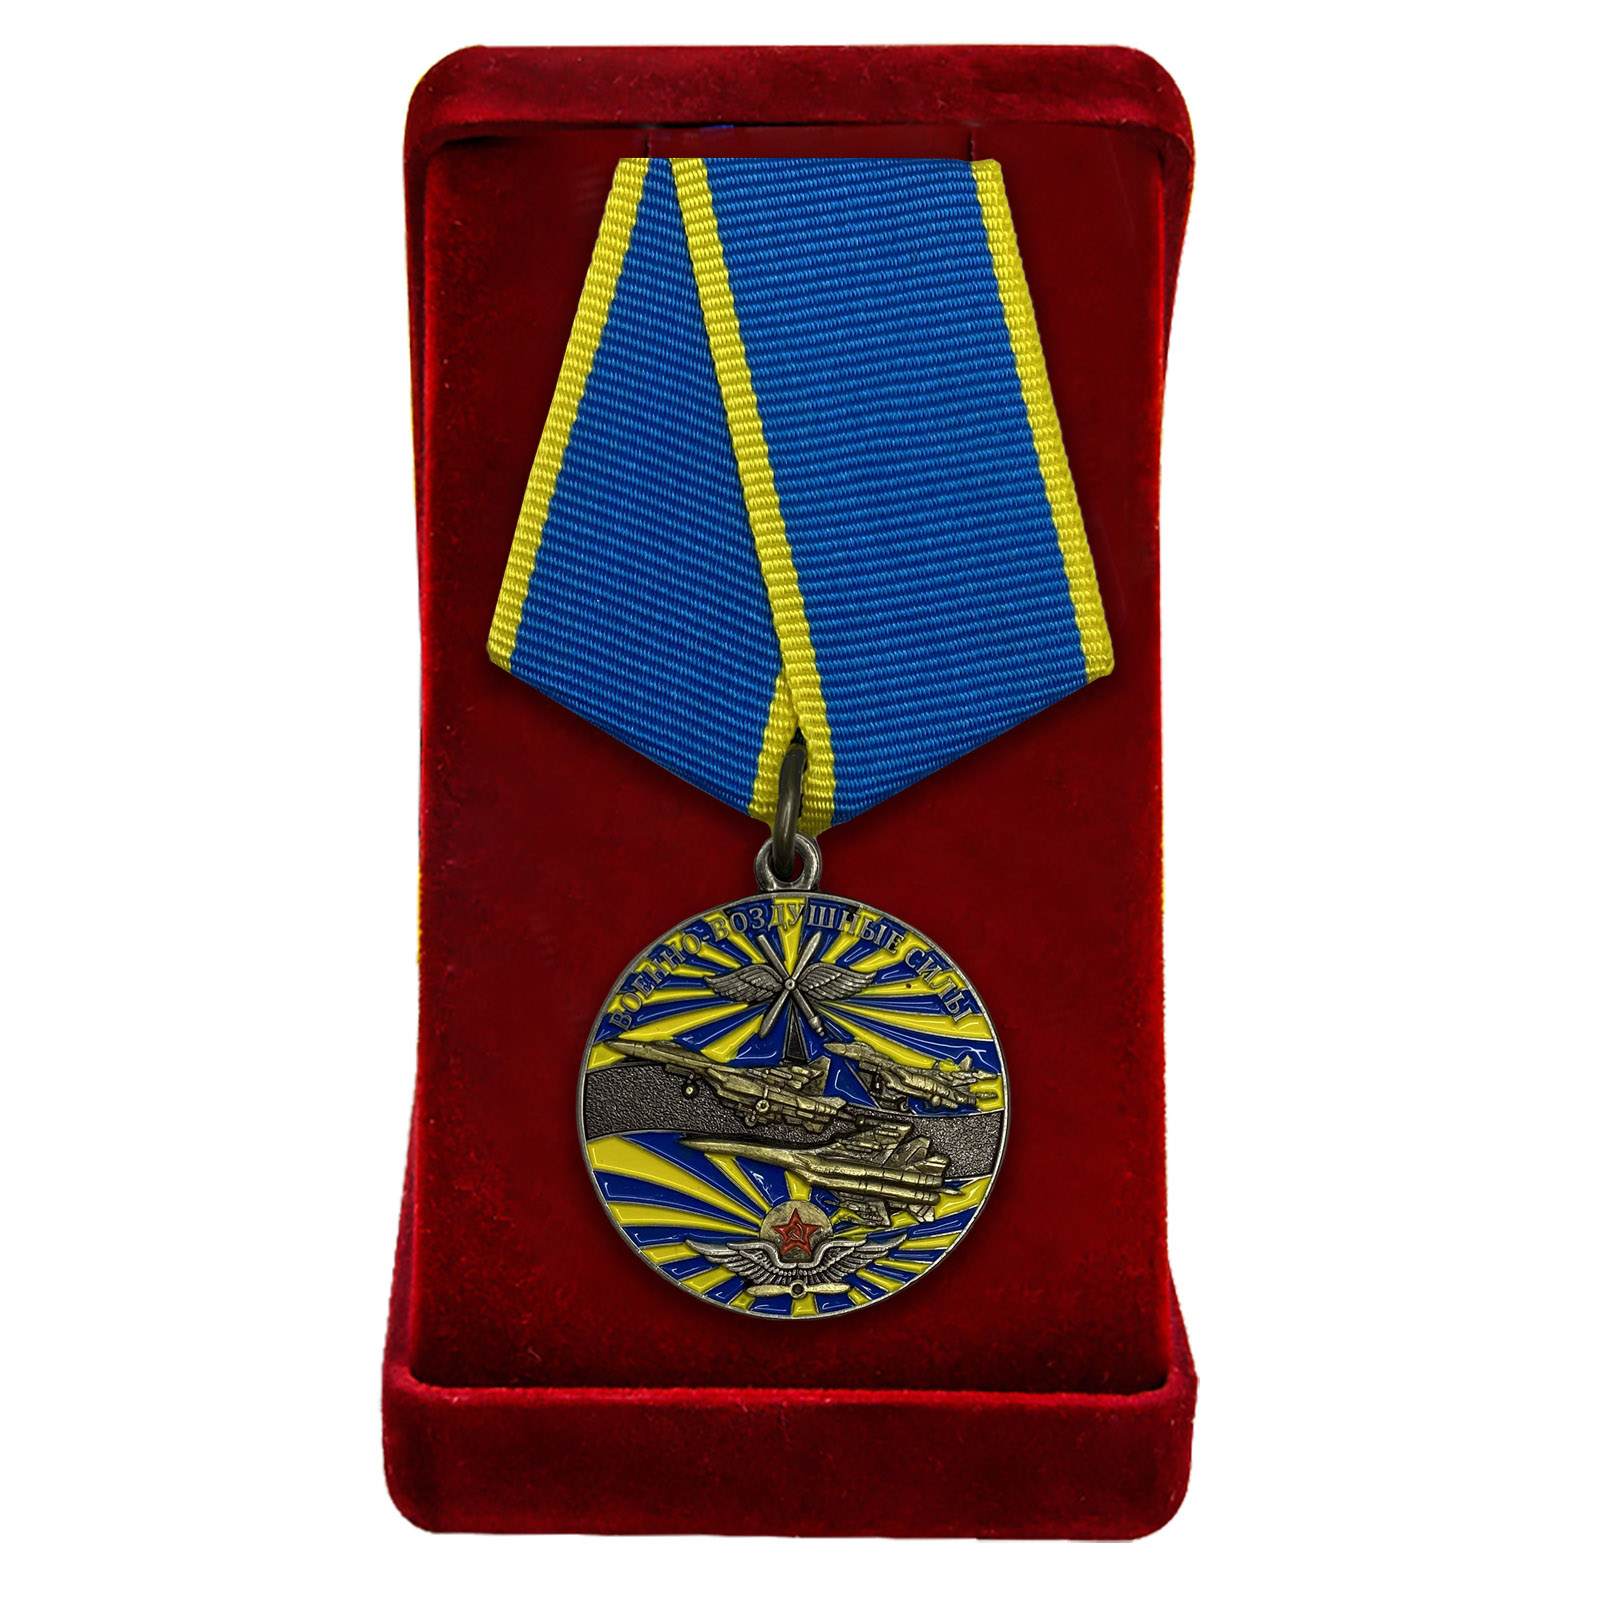 Купить памятную медаль Ветеран ВВС по экономичной цене